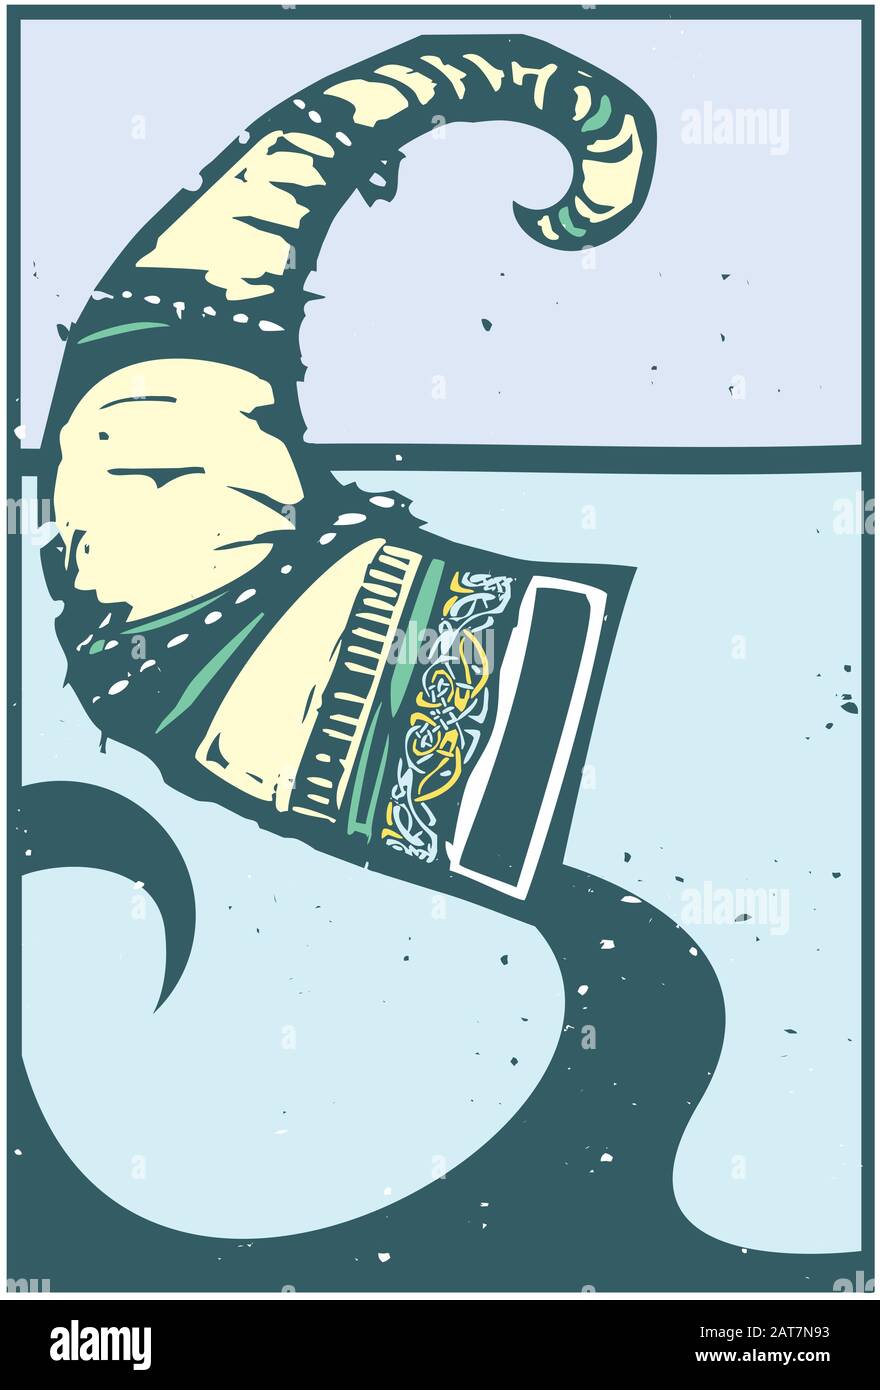 Holzschnitt Stil Expressionistisches Bild eines wikinger Trinkhorns mit zoomorphen Elementen Stock Vektor